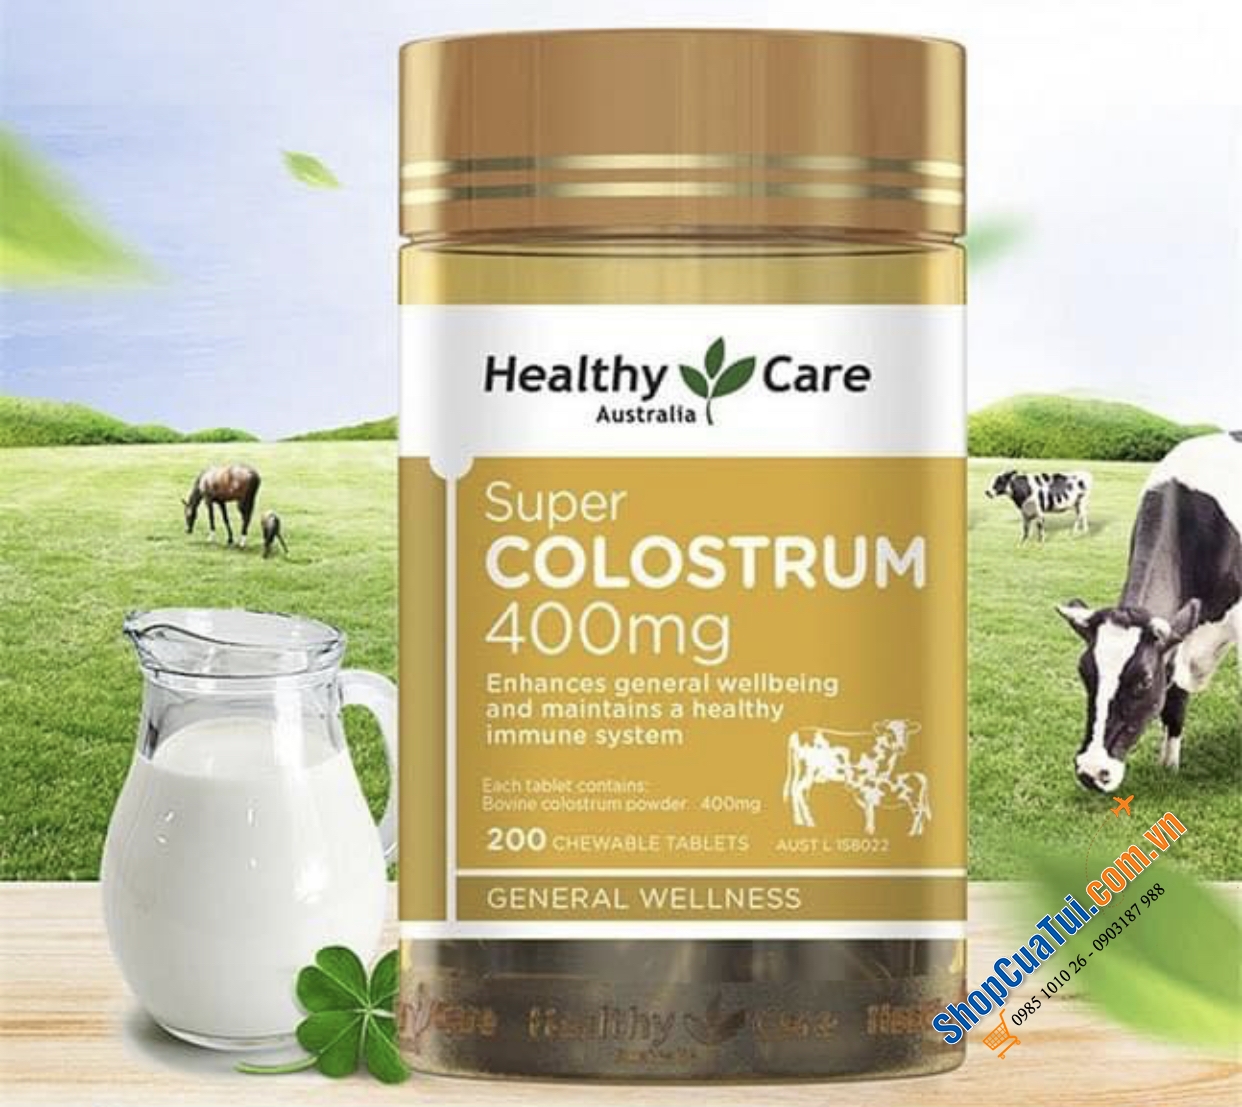 Healthy Care Super Colostrum 400mg 200 Chewable Tablets - Sữa bò non dạng viên cho trẻ trên 1 tuổi và người lớn